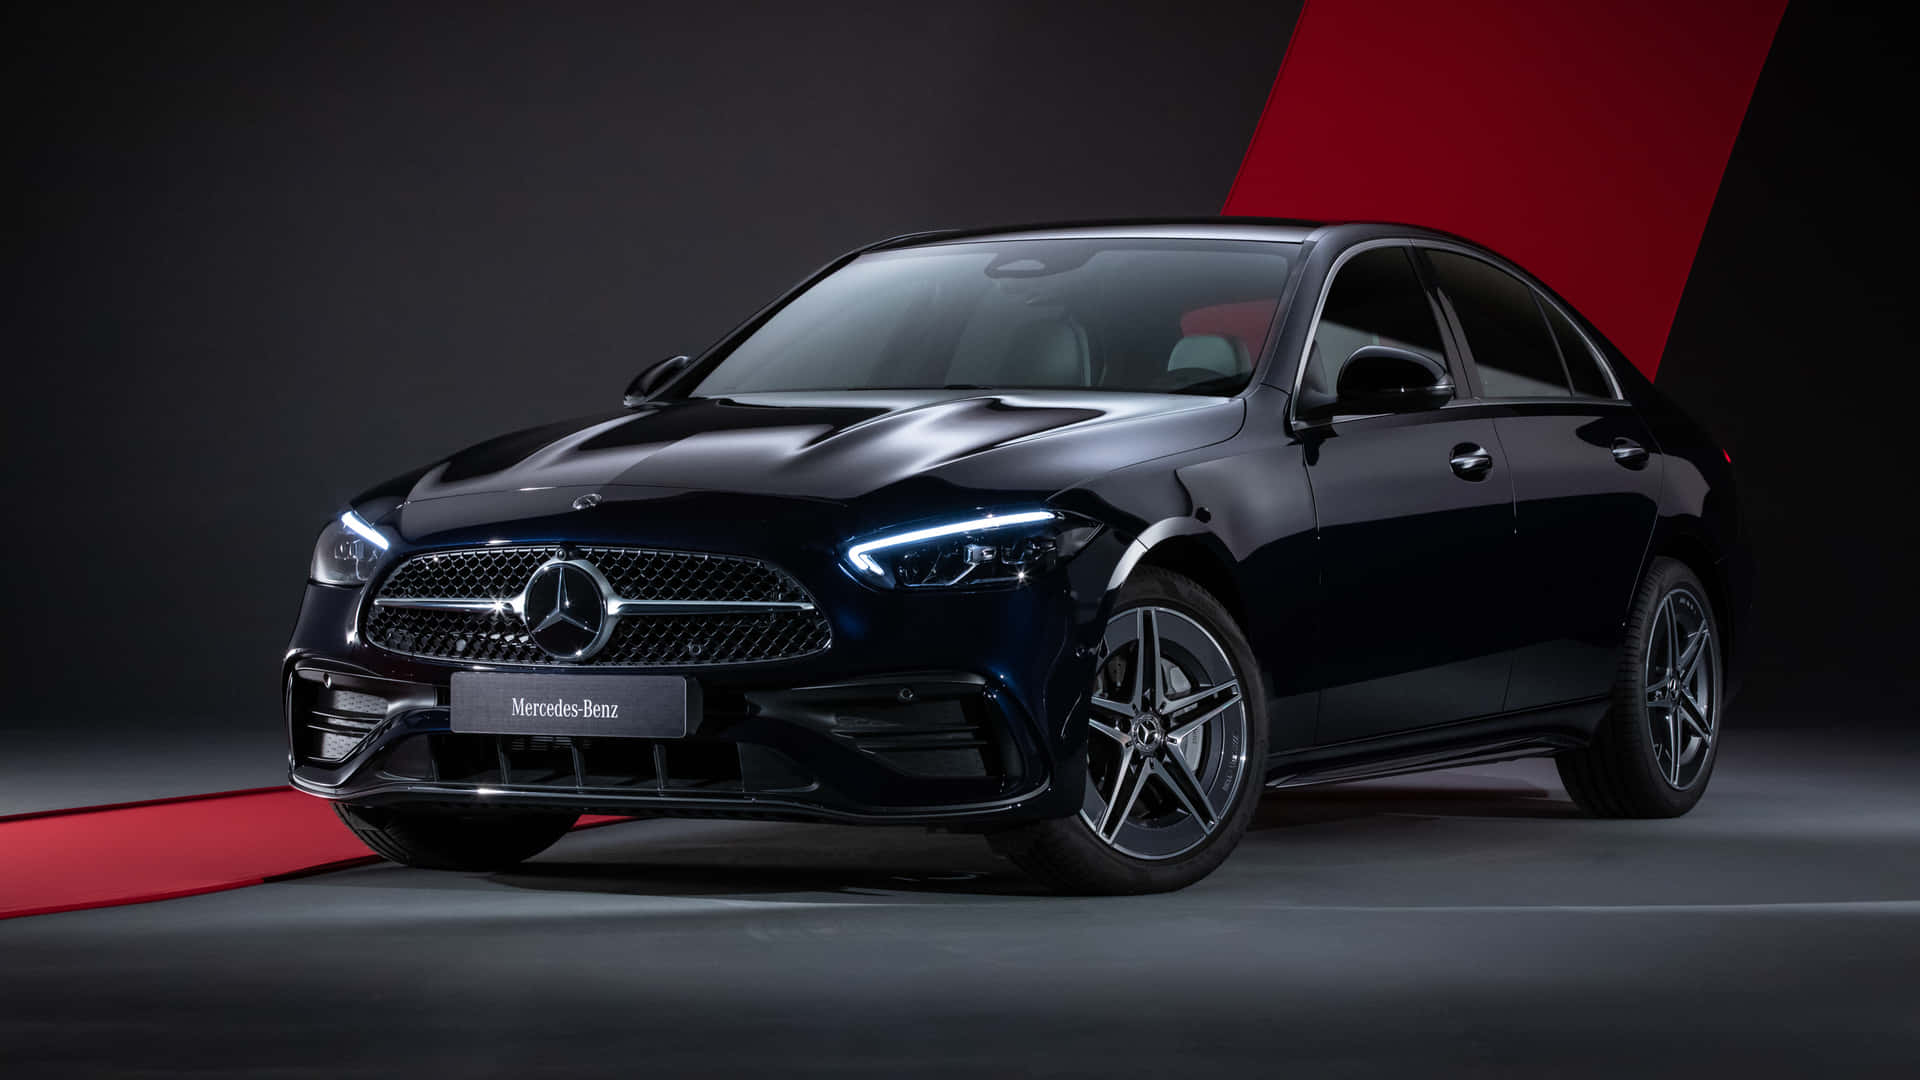 Stunning 4K Mercedes Wallpaper